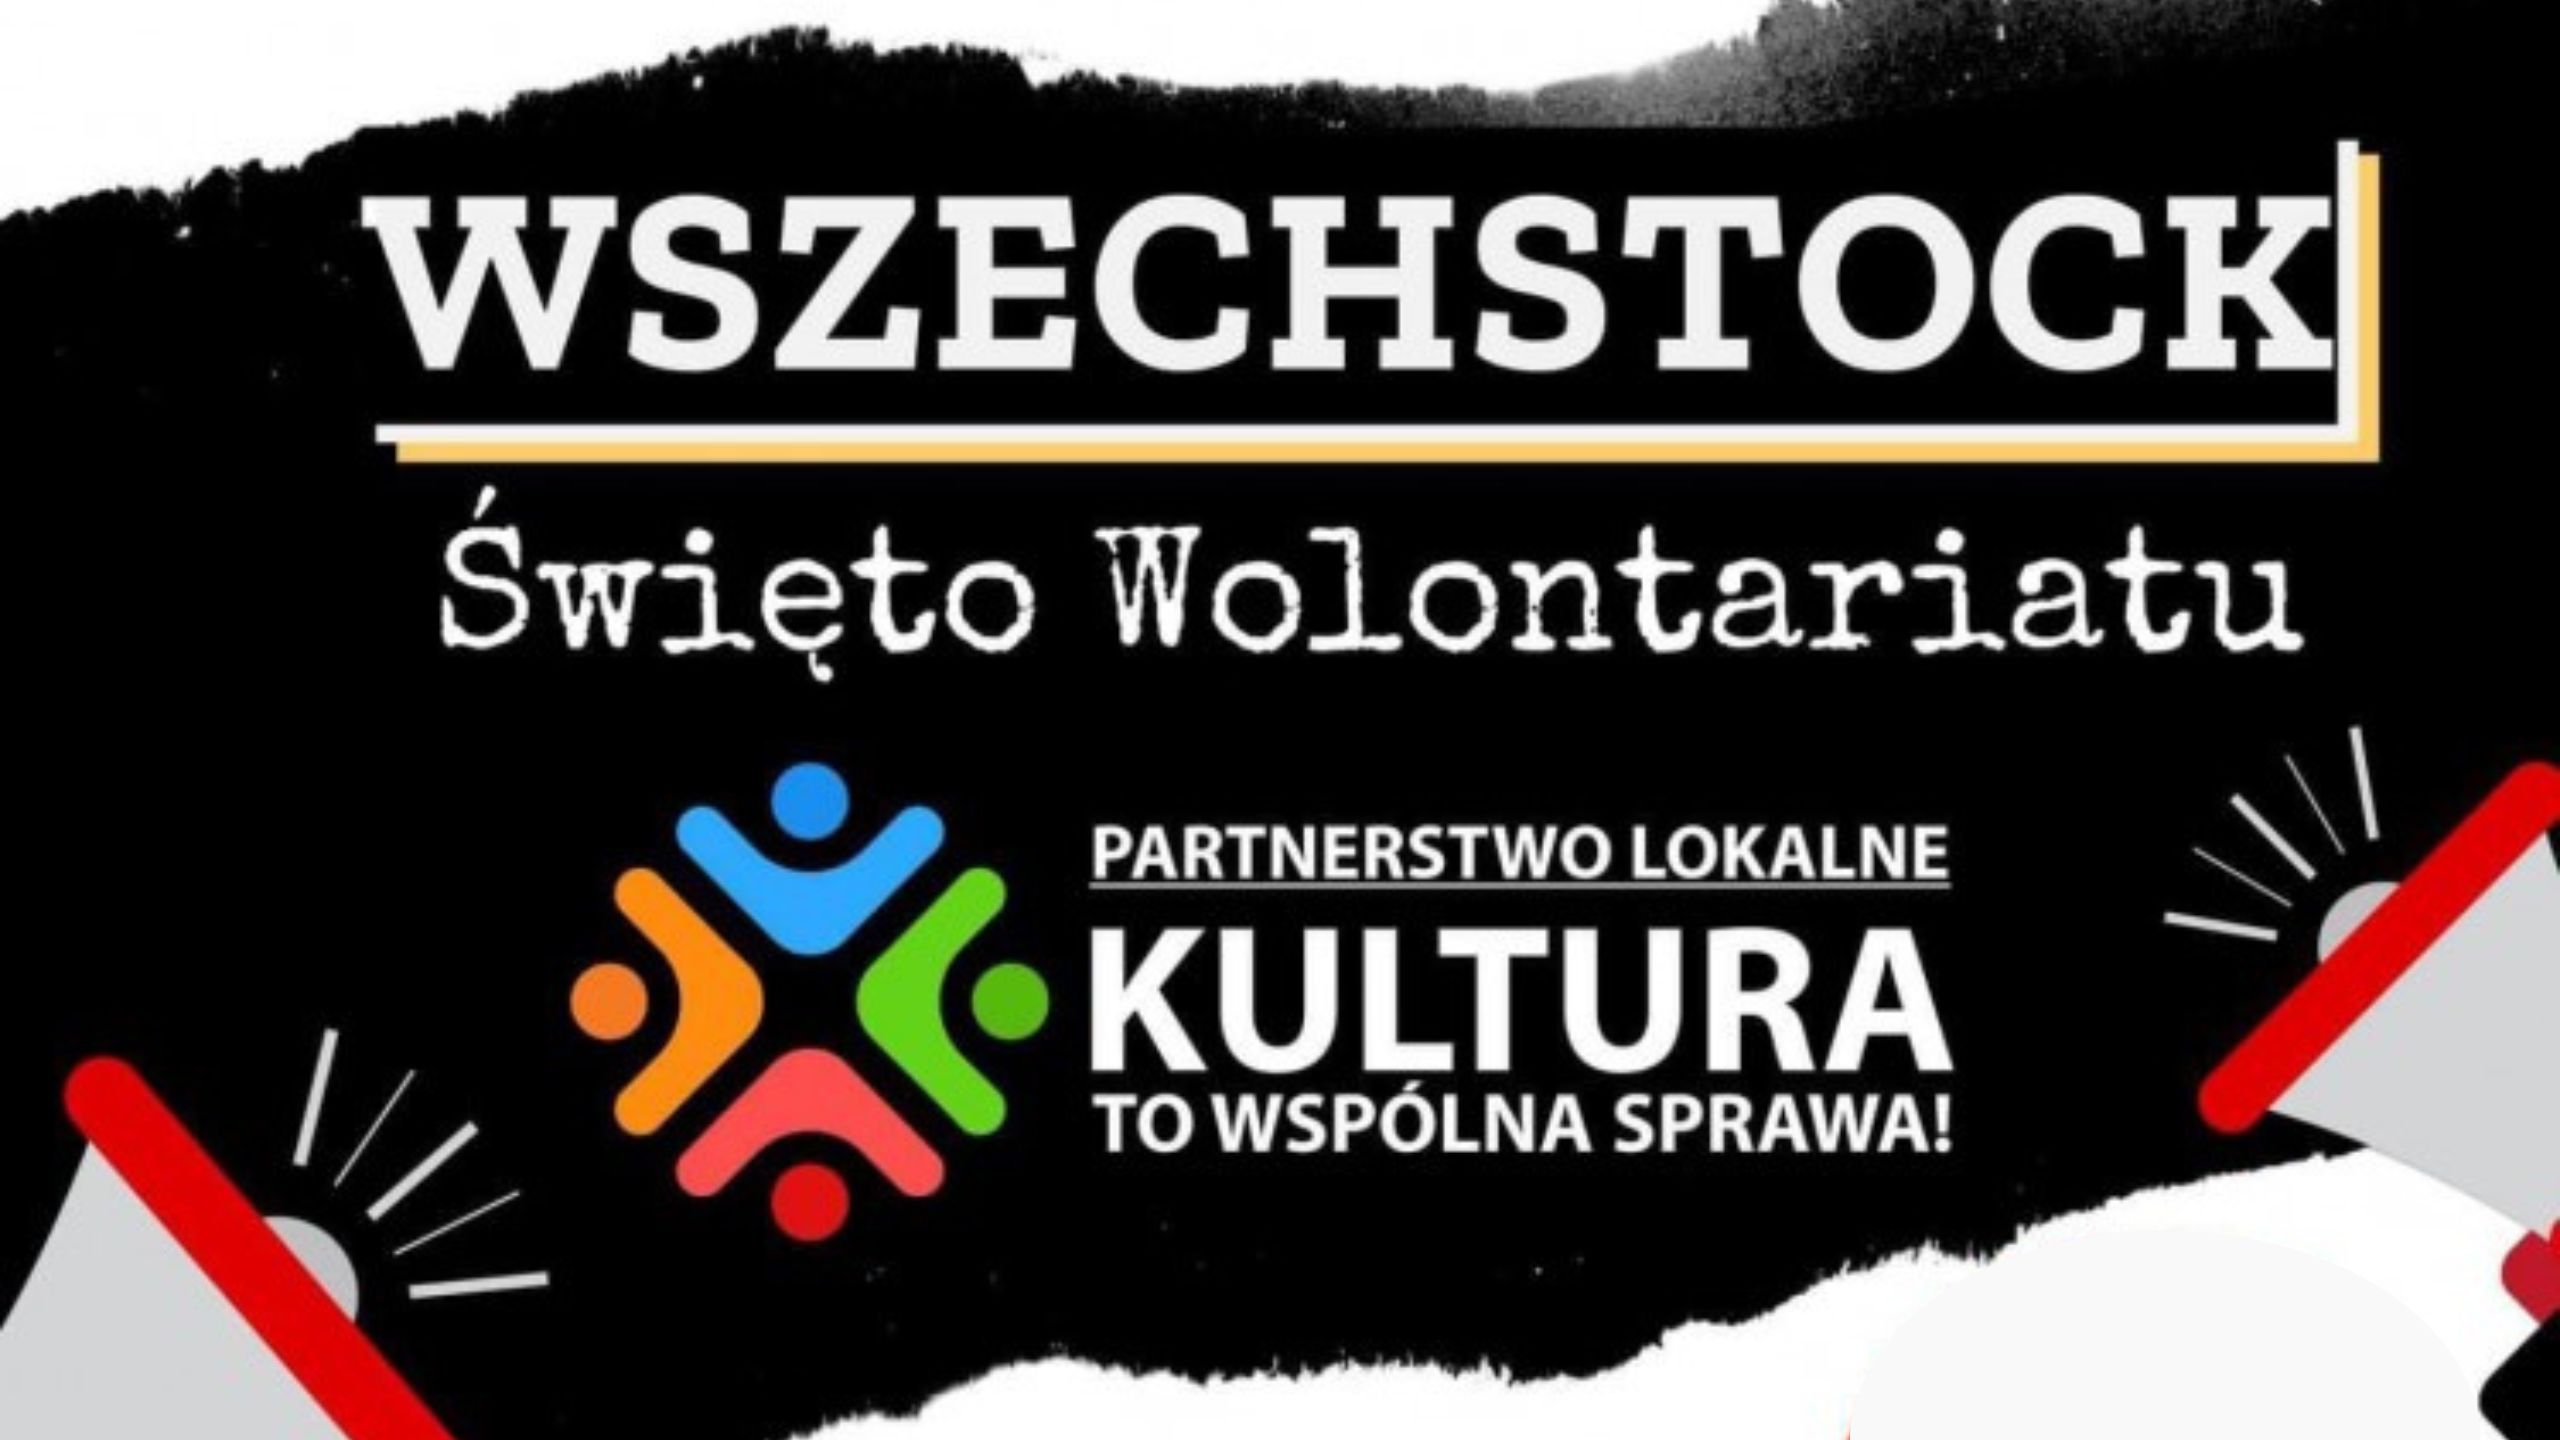 Wszechstock - śwęto wolontariatu